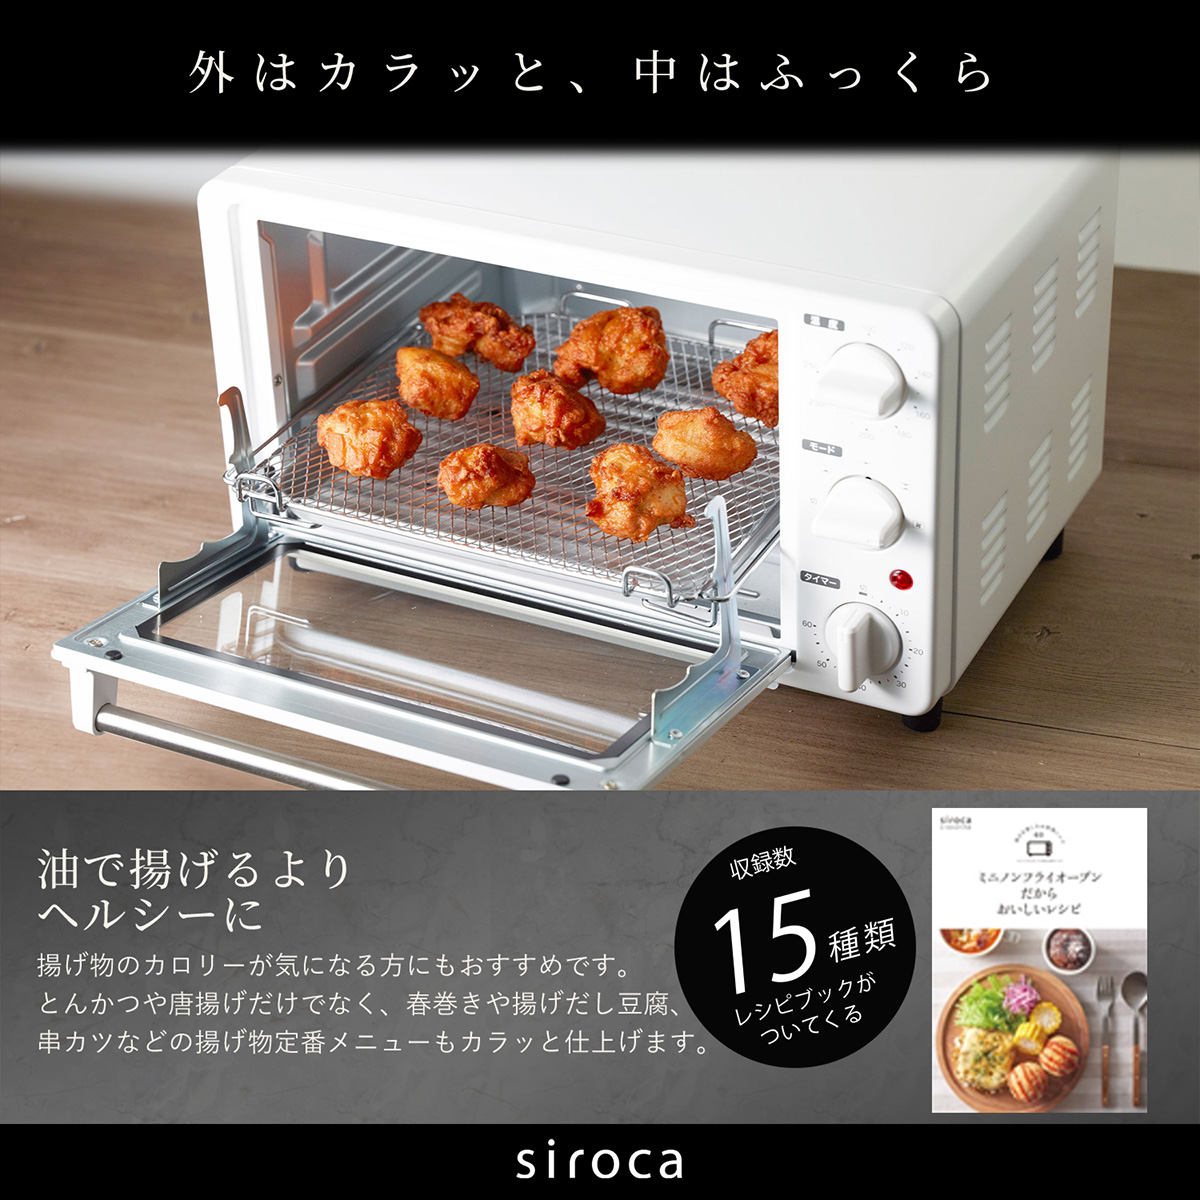 siroca ノンフライオーブン ノンフライ調理 16メニュー オーブン調理 トースト コンベクション コンパクト ホワイト